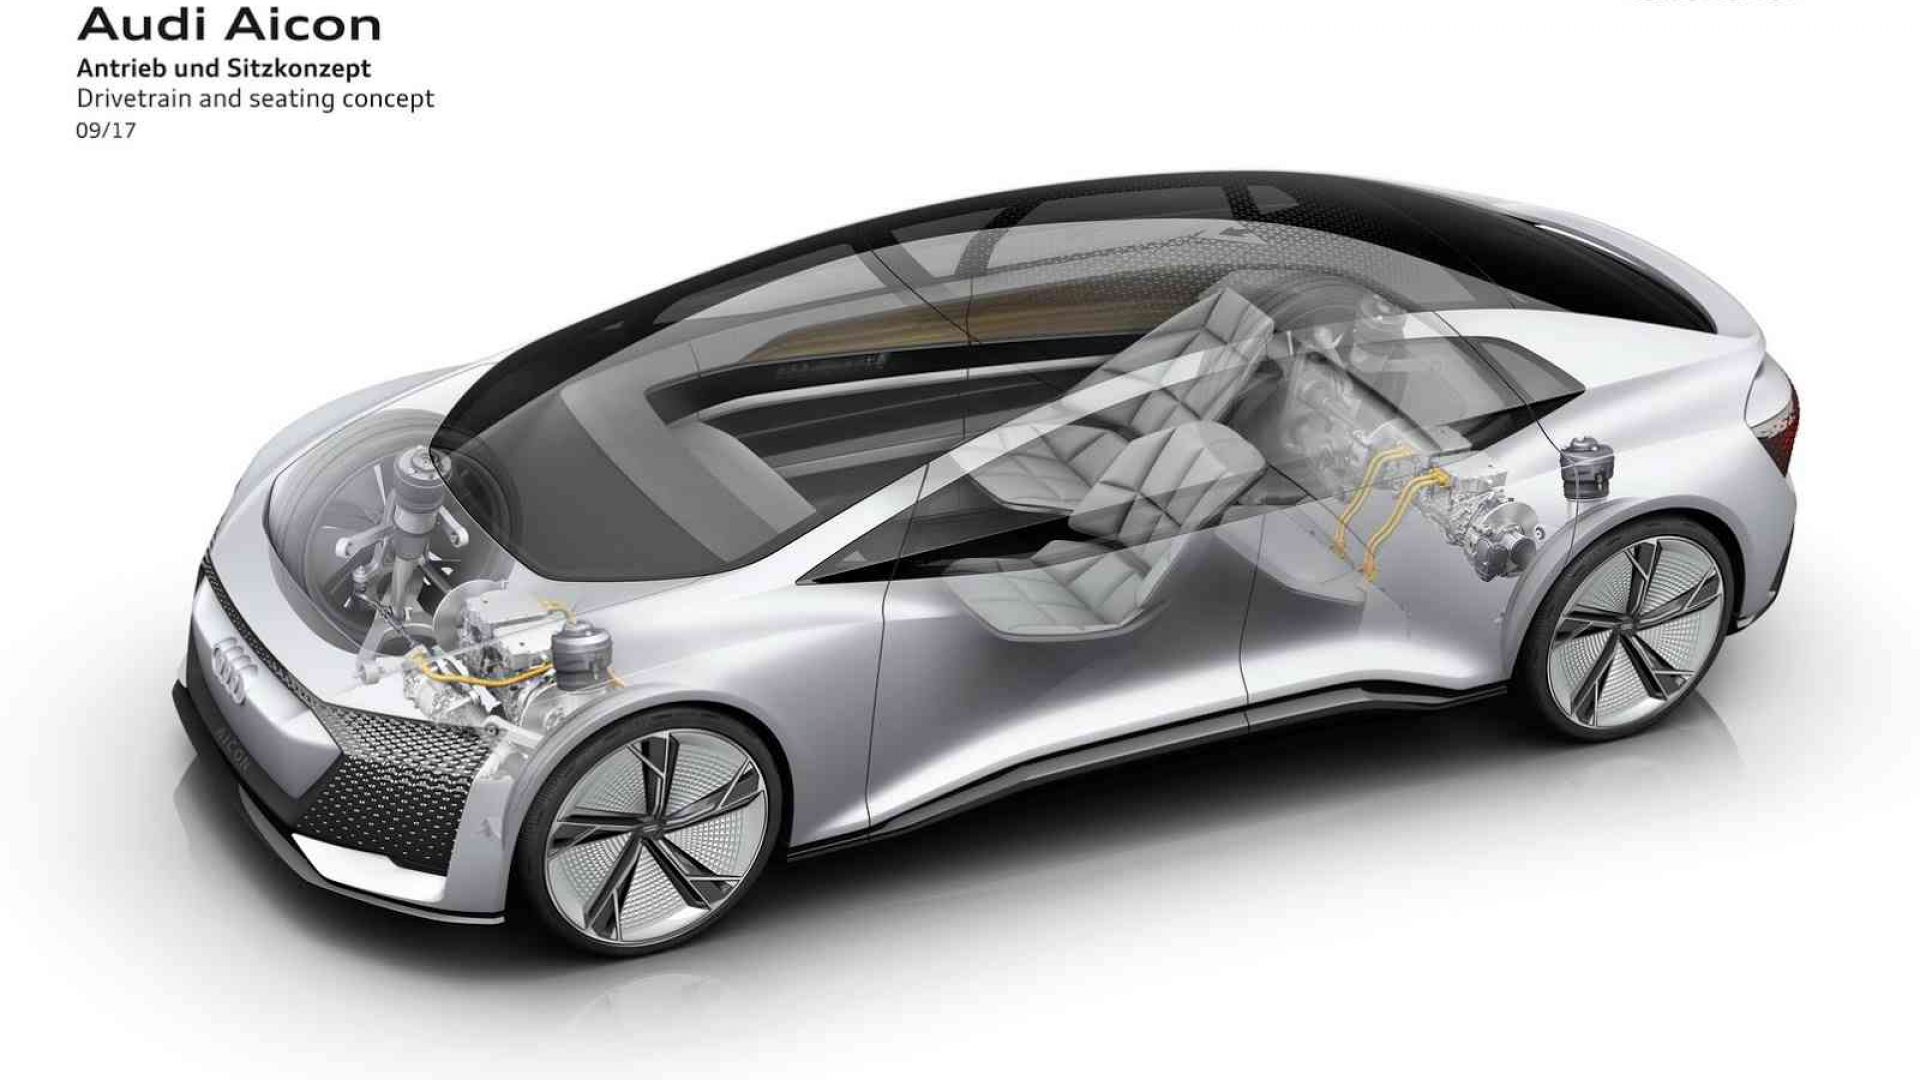 2017-Audi-Aicon-Concept-Layout-02